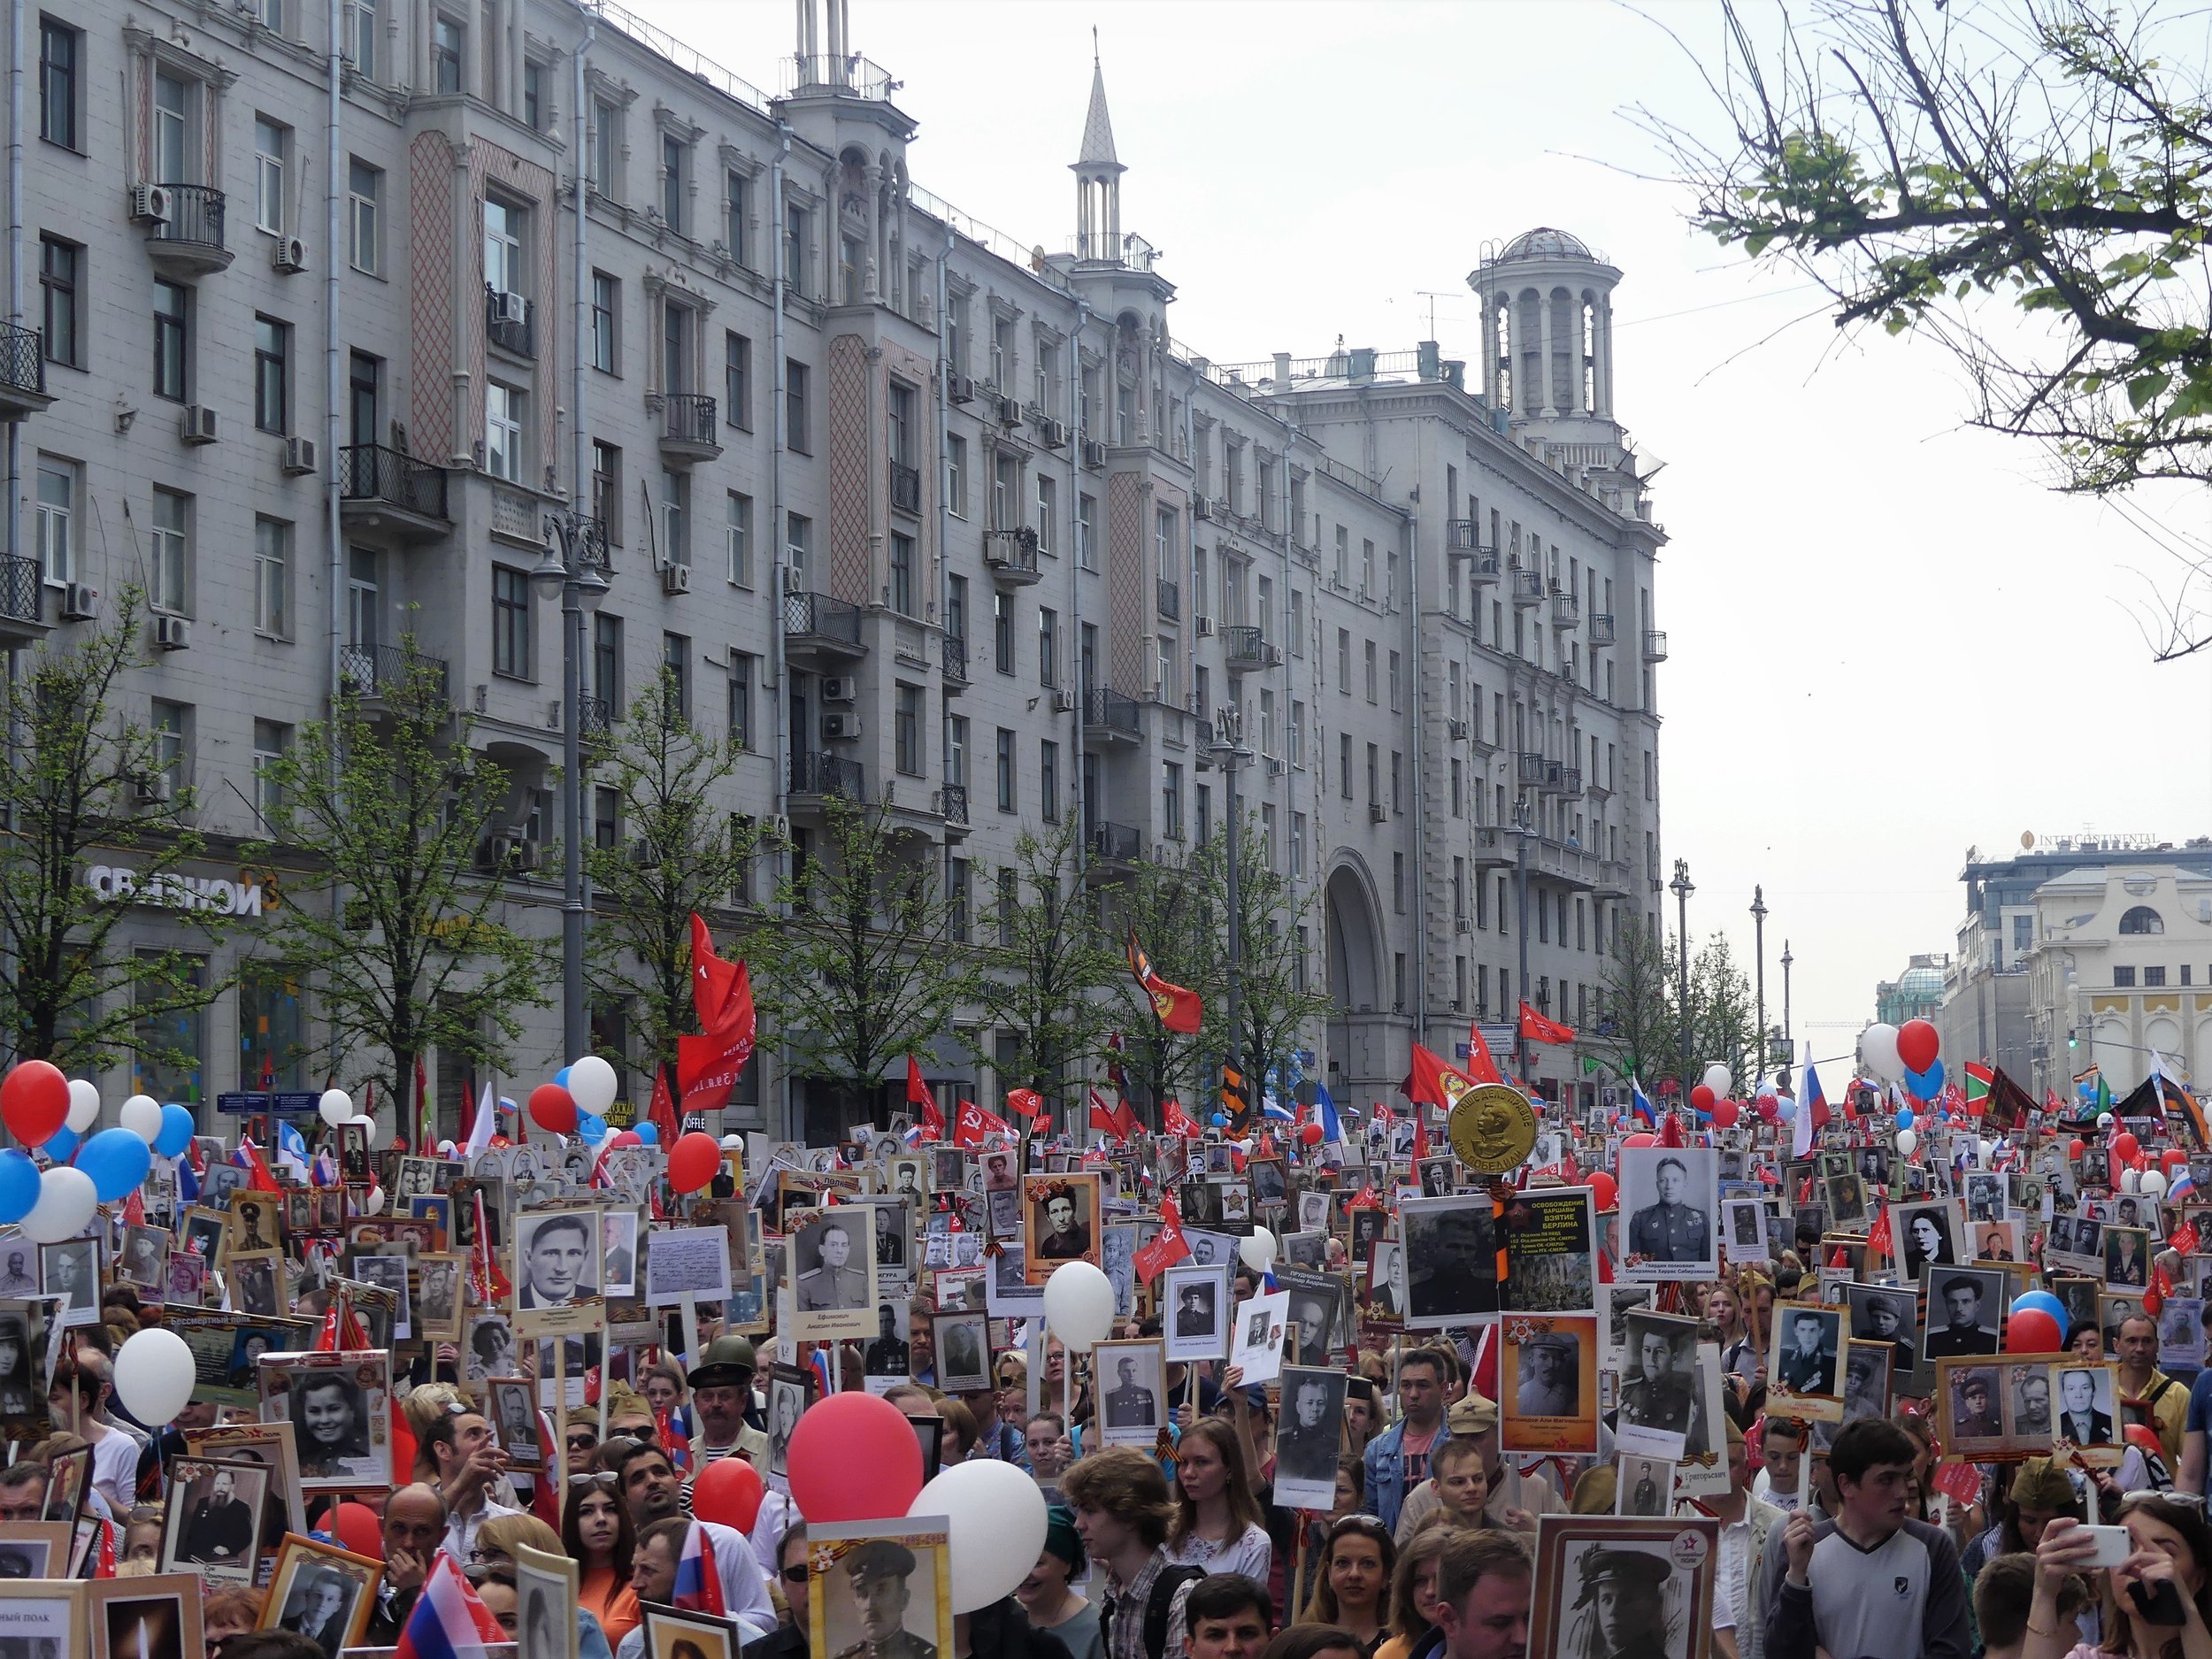  The crowd sings and roars heated “Hurra!”s in Tverskaya Street. 